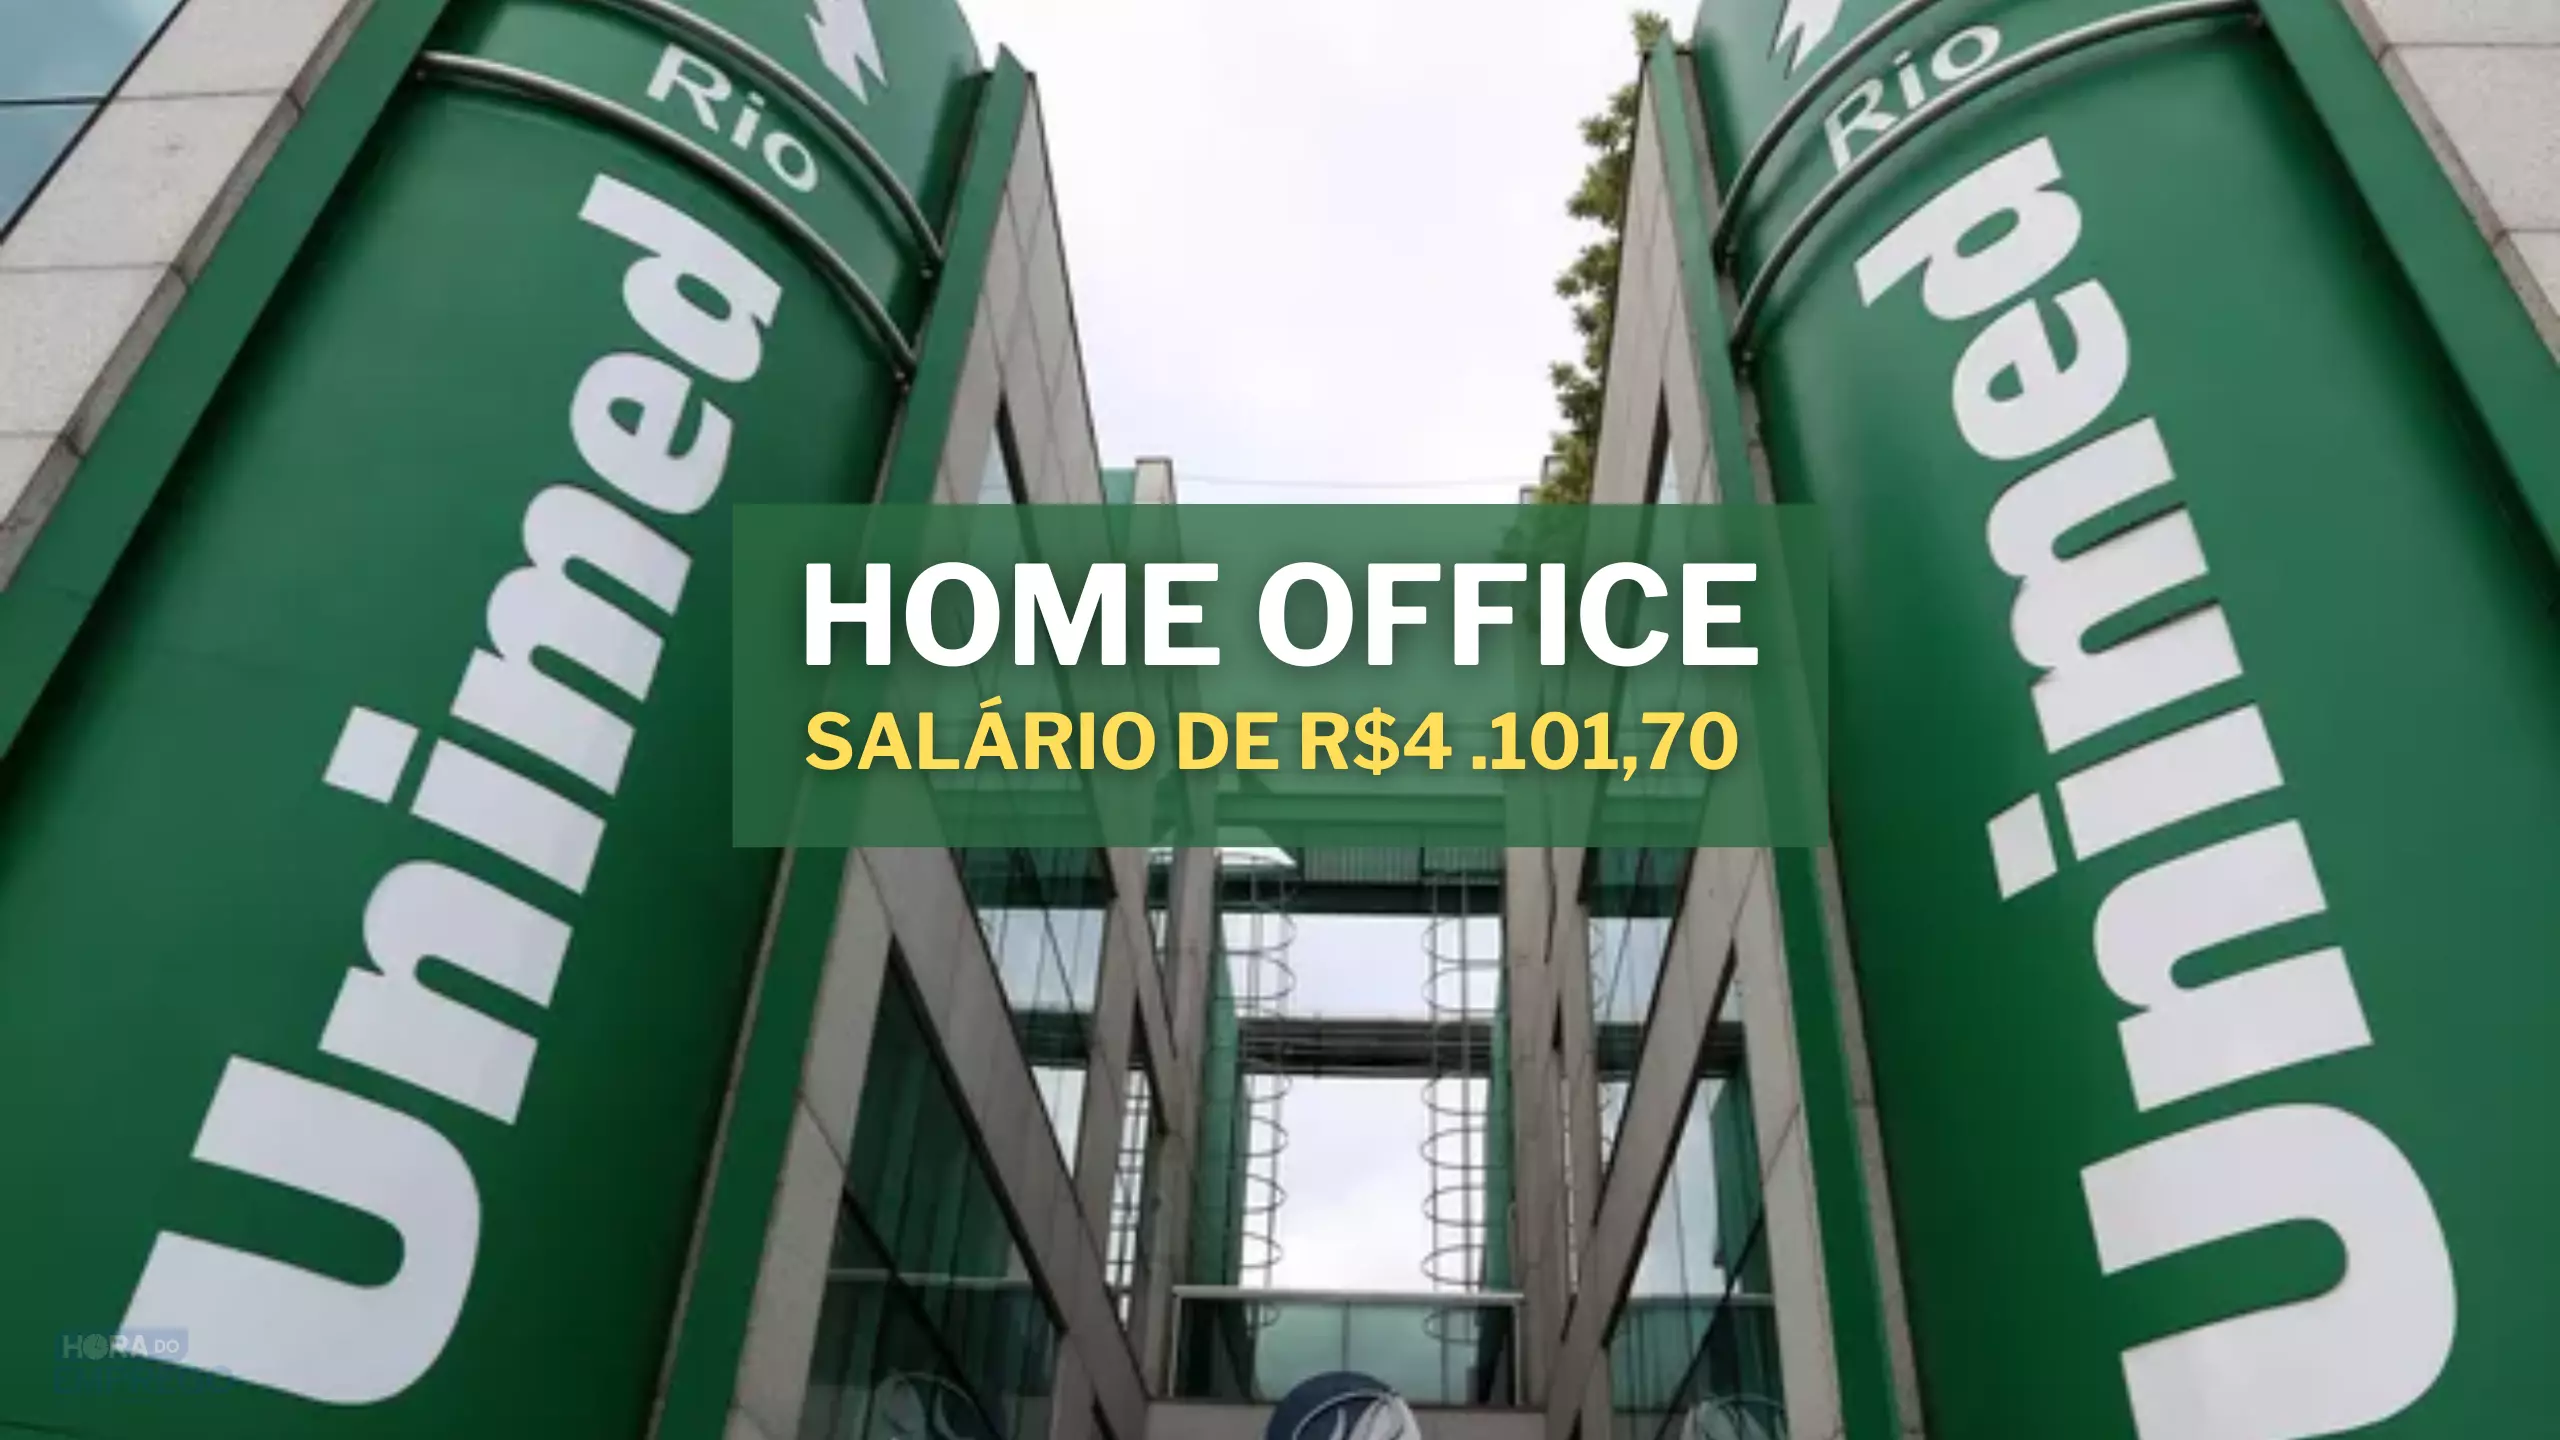 Unimed abre vagas HOME OFFICE para o setor de Comunicação e Marketing com salário de R$4.101,70 e Alimentação de R$ 800,00